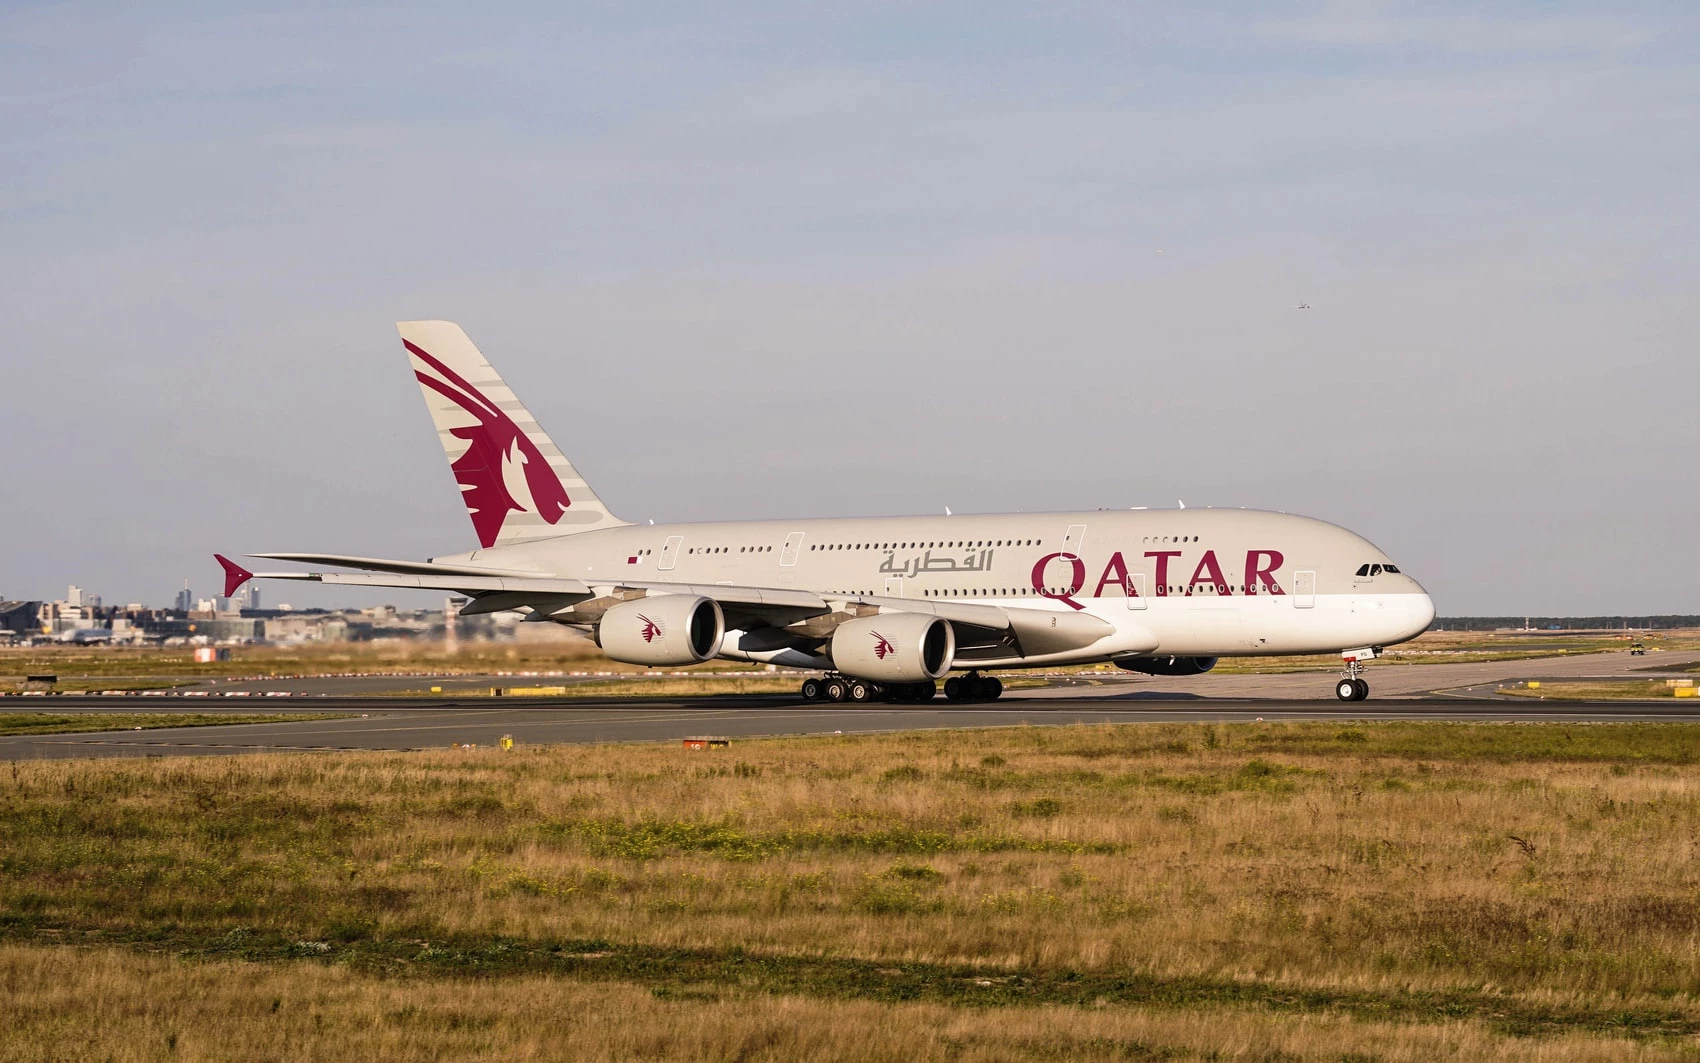 Qatar: Qatar có diện tích chỉ hơn 11.000 km2. Do vậy, đất nước này không có bất kỳ chuyến bay nội địa nào. Tuy nhiên Qatar Airways vẫn được biết đến là hãng hàng không đẳng cấp thế giới.